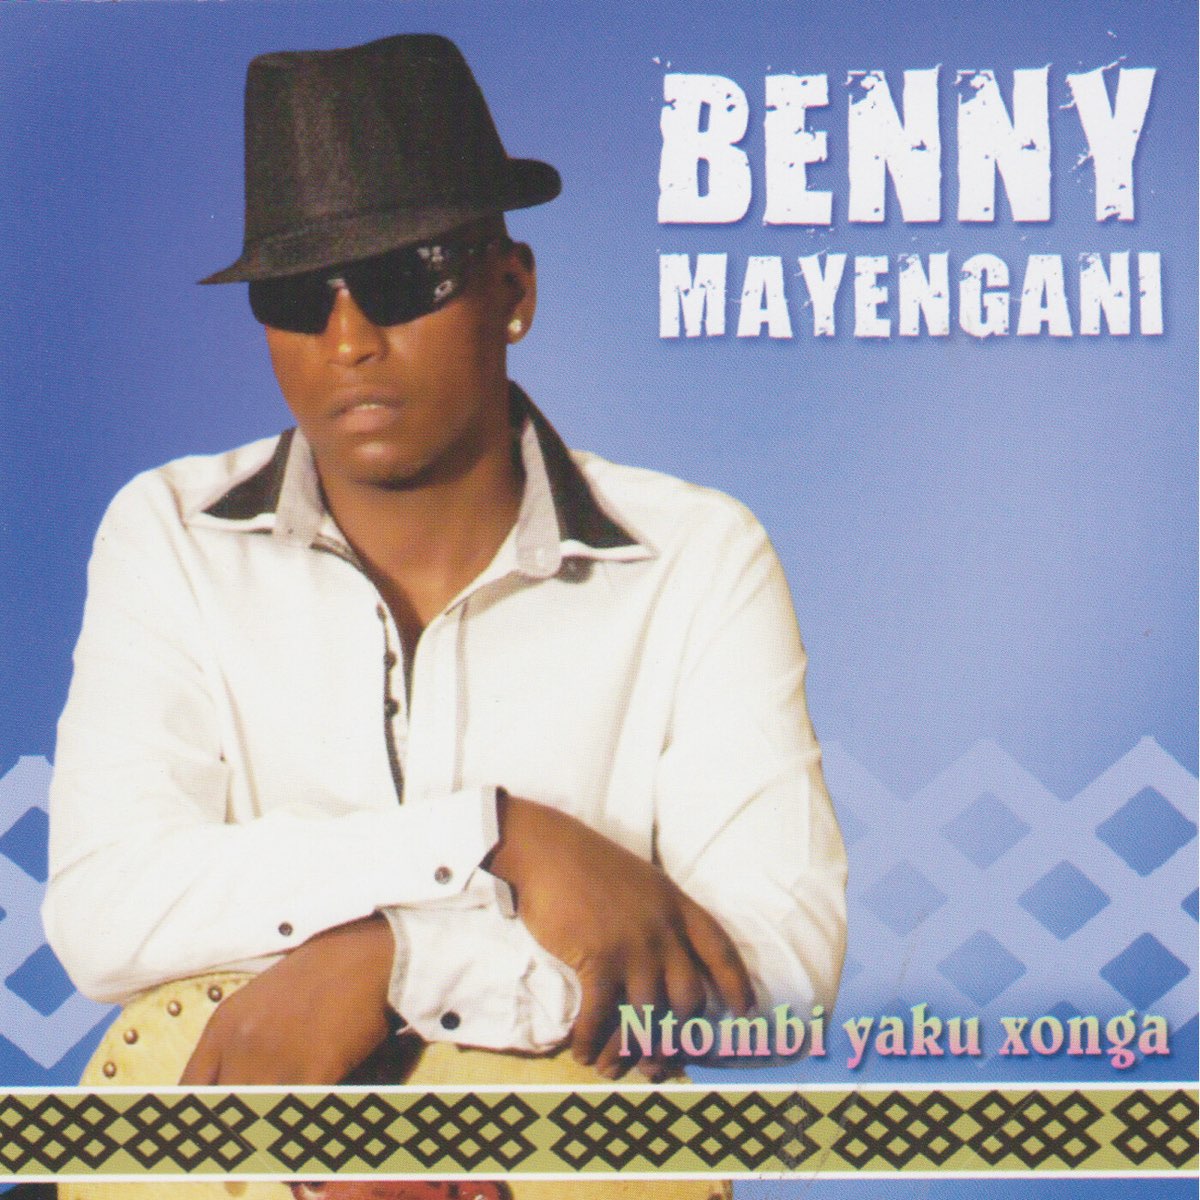 ‎Ntombi Yaku Xonga Album by Benny Mayengani Apple Music